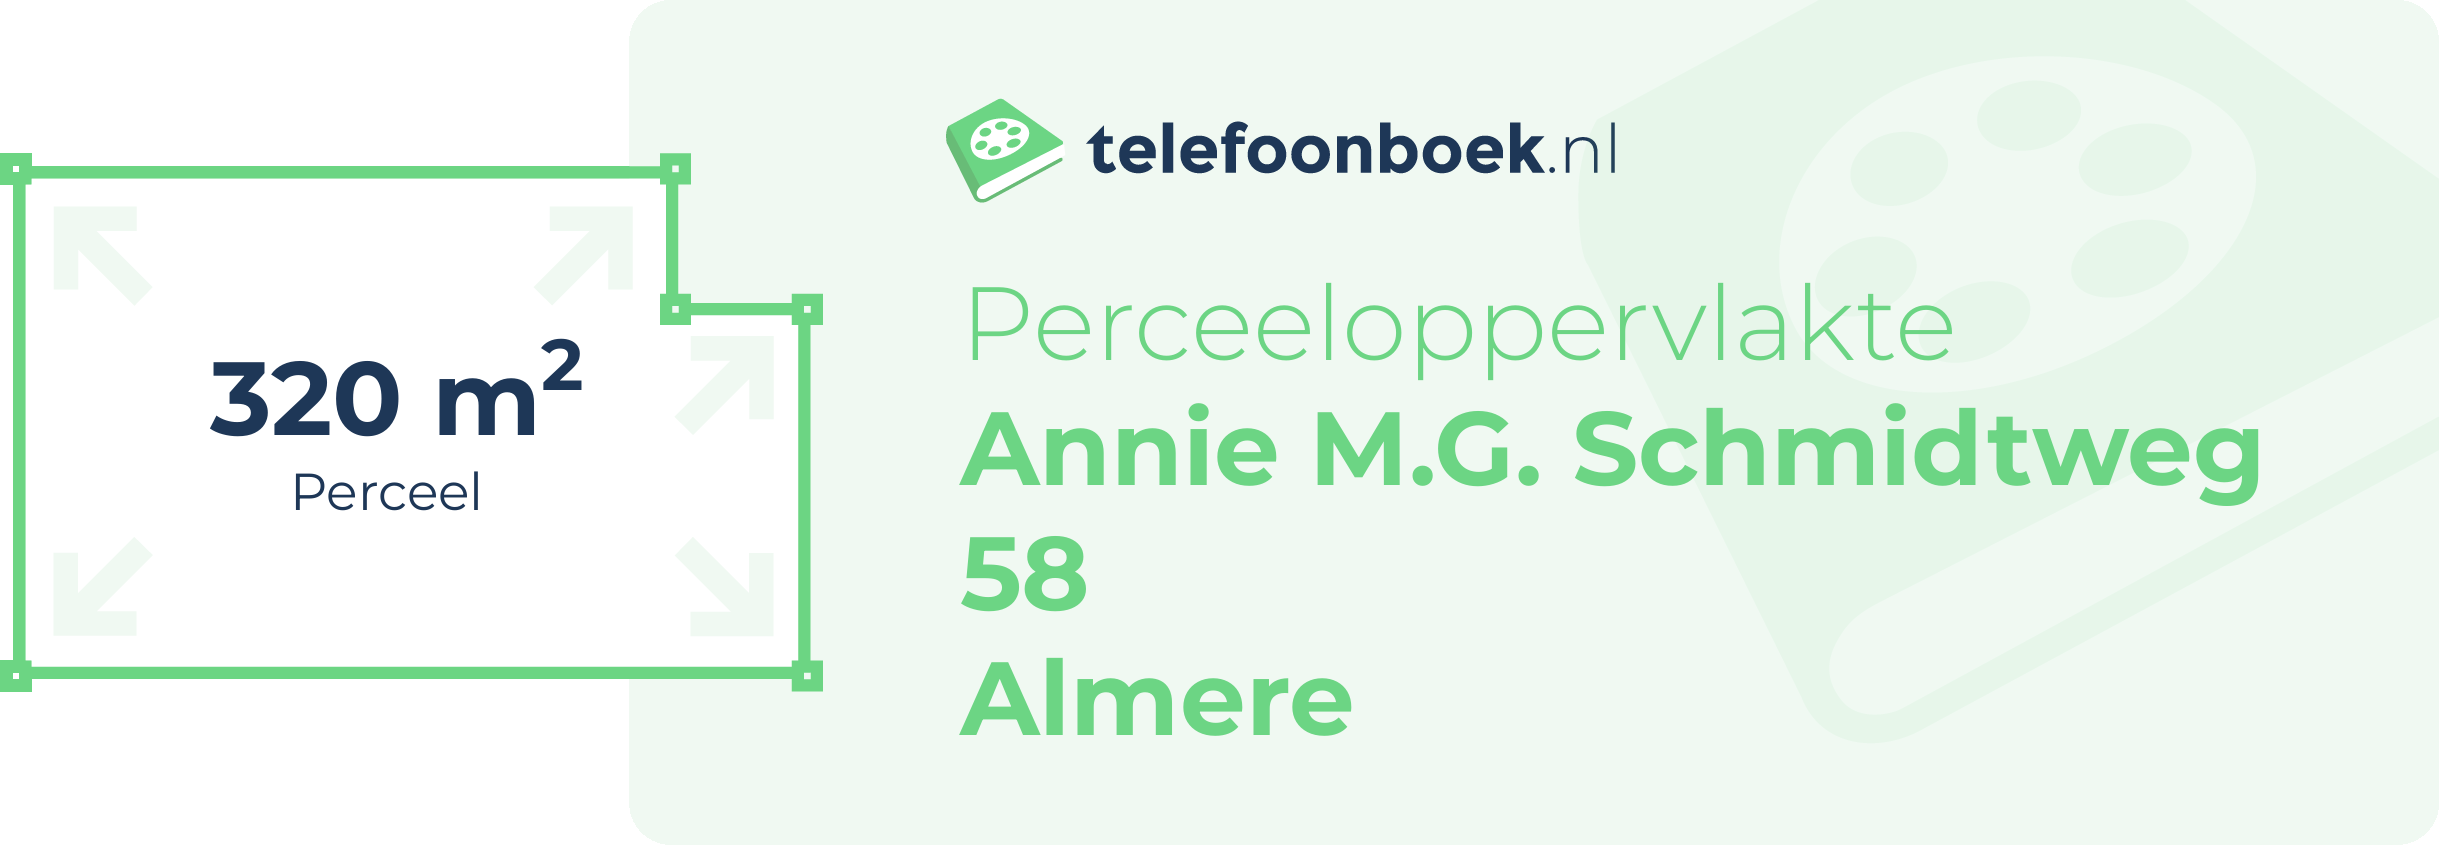 Perceeloppervlakte Annie M.G. Schmidtweg 58 Almere